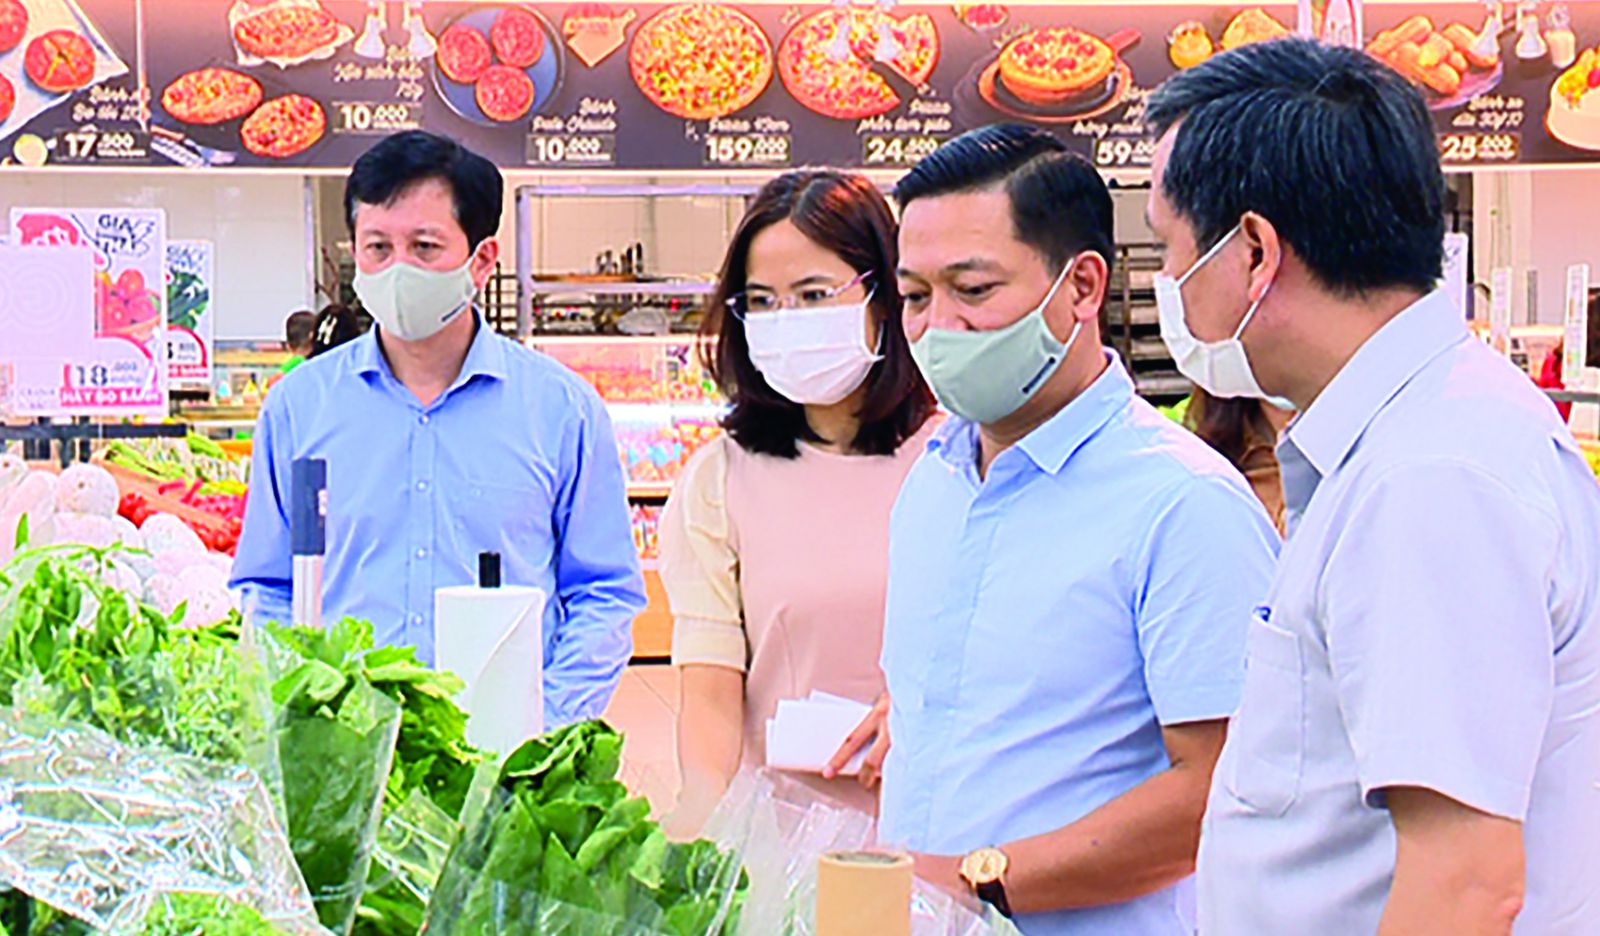  Đồng chí Nguyễn Cao Sơn- Phó Chủ tịch UBND tỉnh cùng Đ/c Hoàng Trung Kiên- Giám đốc Sở Công Thương đi kiểm tra hàng hóa tại siêu thị GO